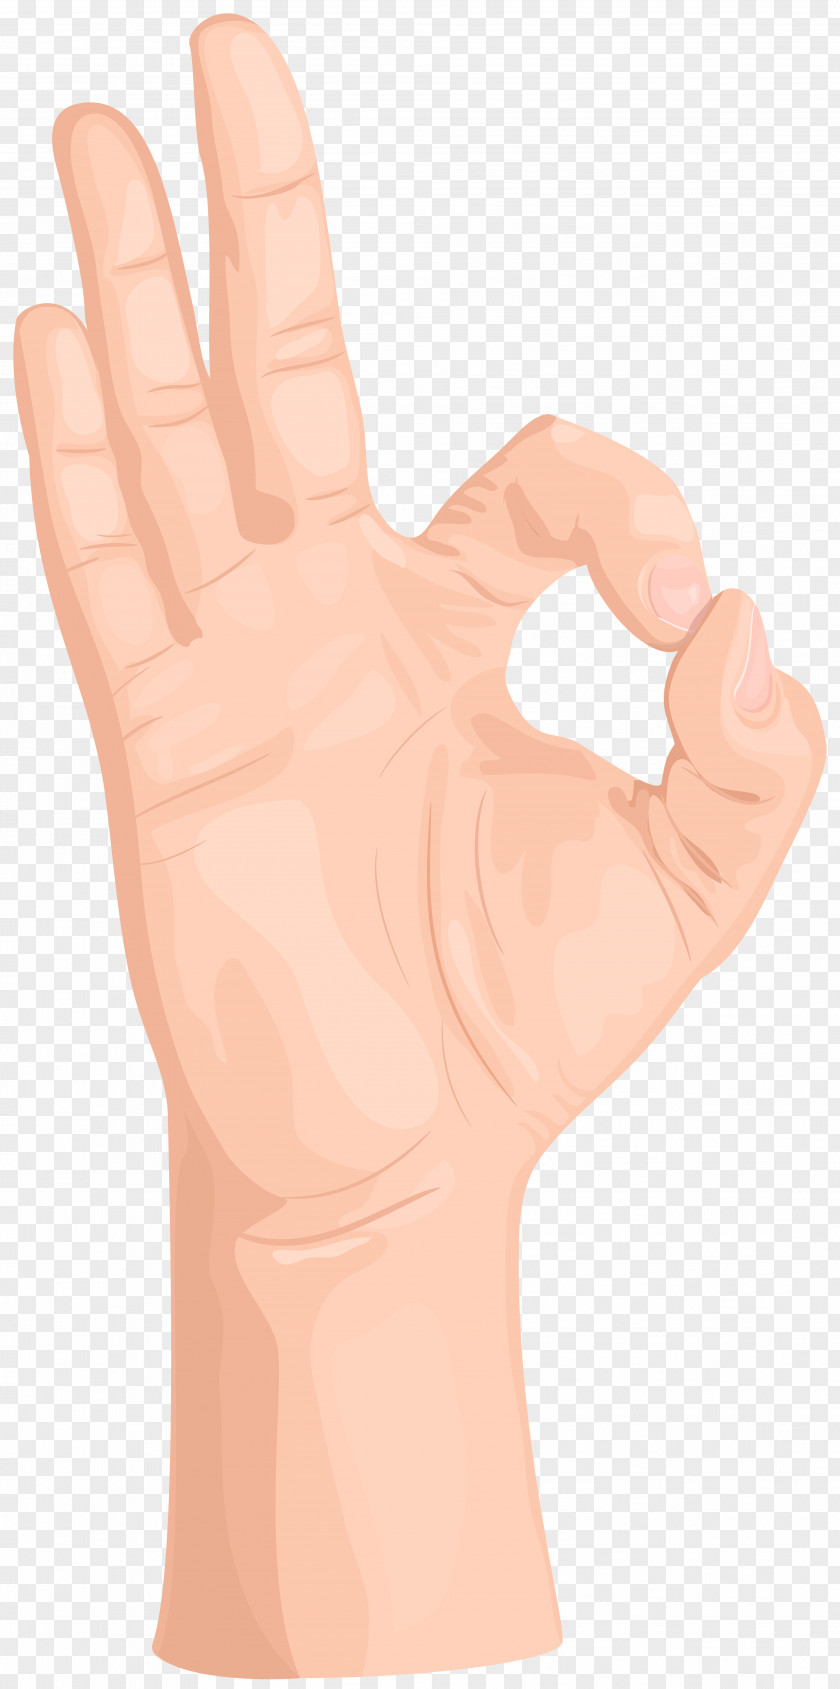 OK Hand Gesture Transparent Clip Art Thumb PNG